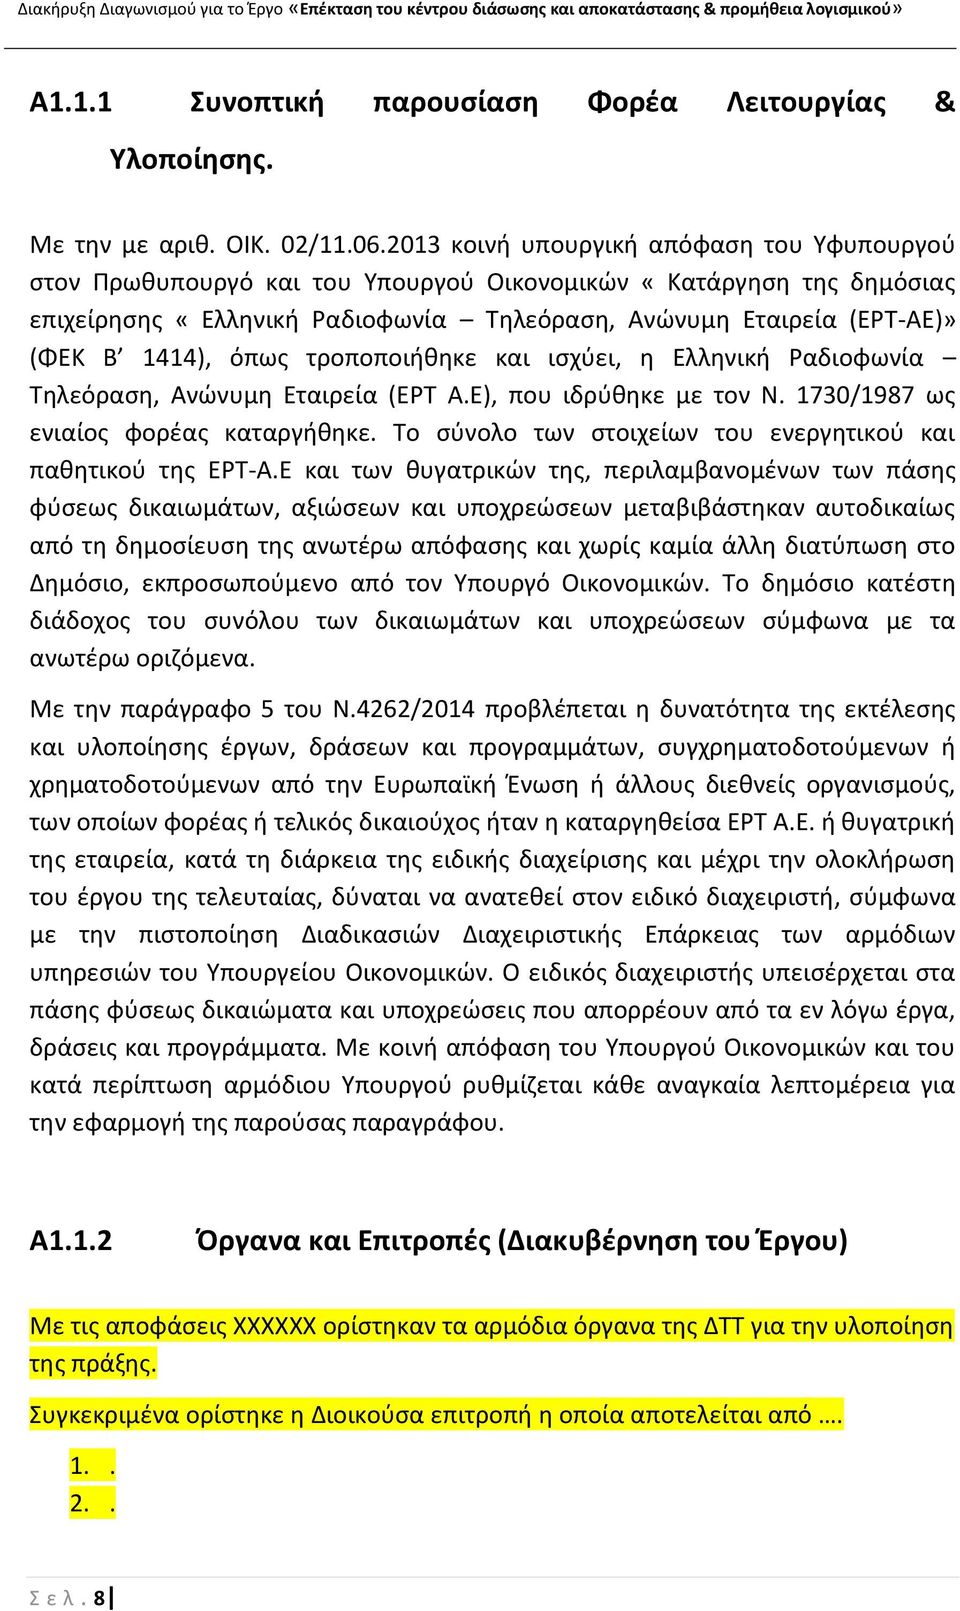 όπωσ τροποποιικθκε και ιςχφει, θ Ελλθνικι αδιοφωνία Τθλεόραςθ, Ανϊνυμθ Εταιρεία (ΕΤ Α.Ε), που ιδρφκθκε με τον Ν. 1730/1987 ωσ ενιαίοσ φορζασ καταργικθκε.